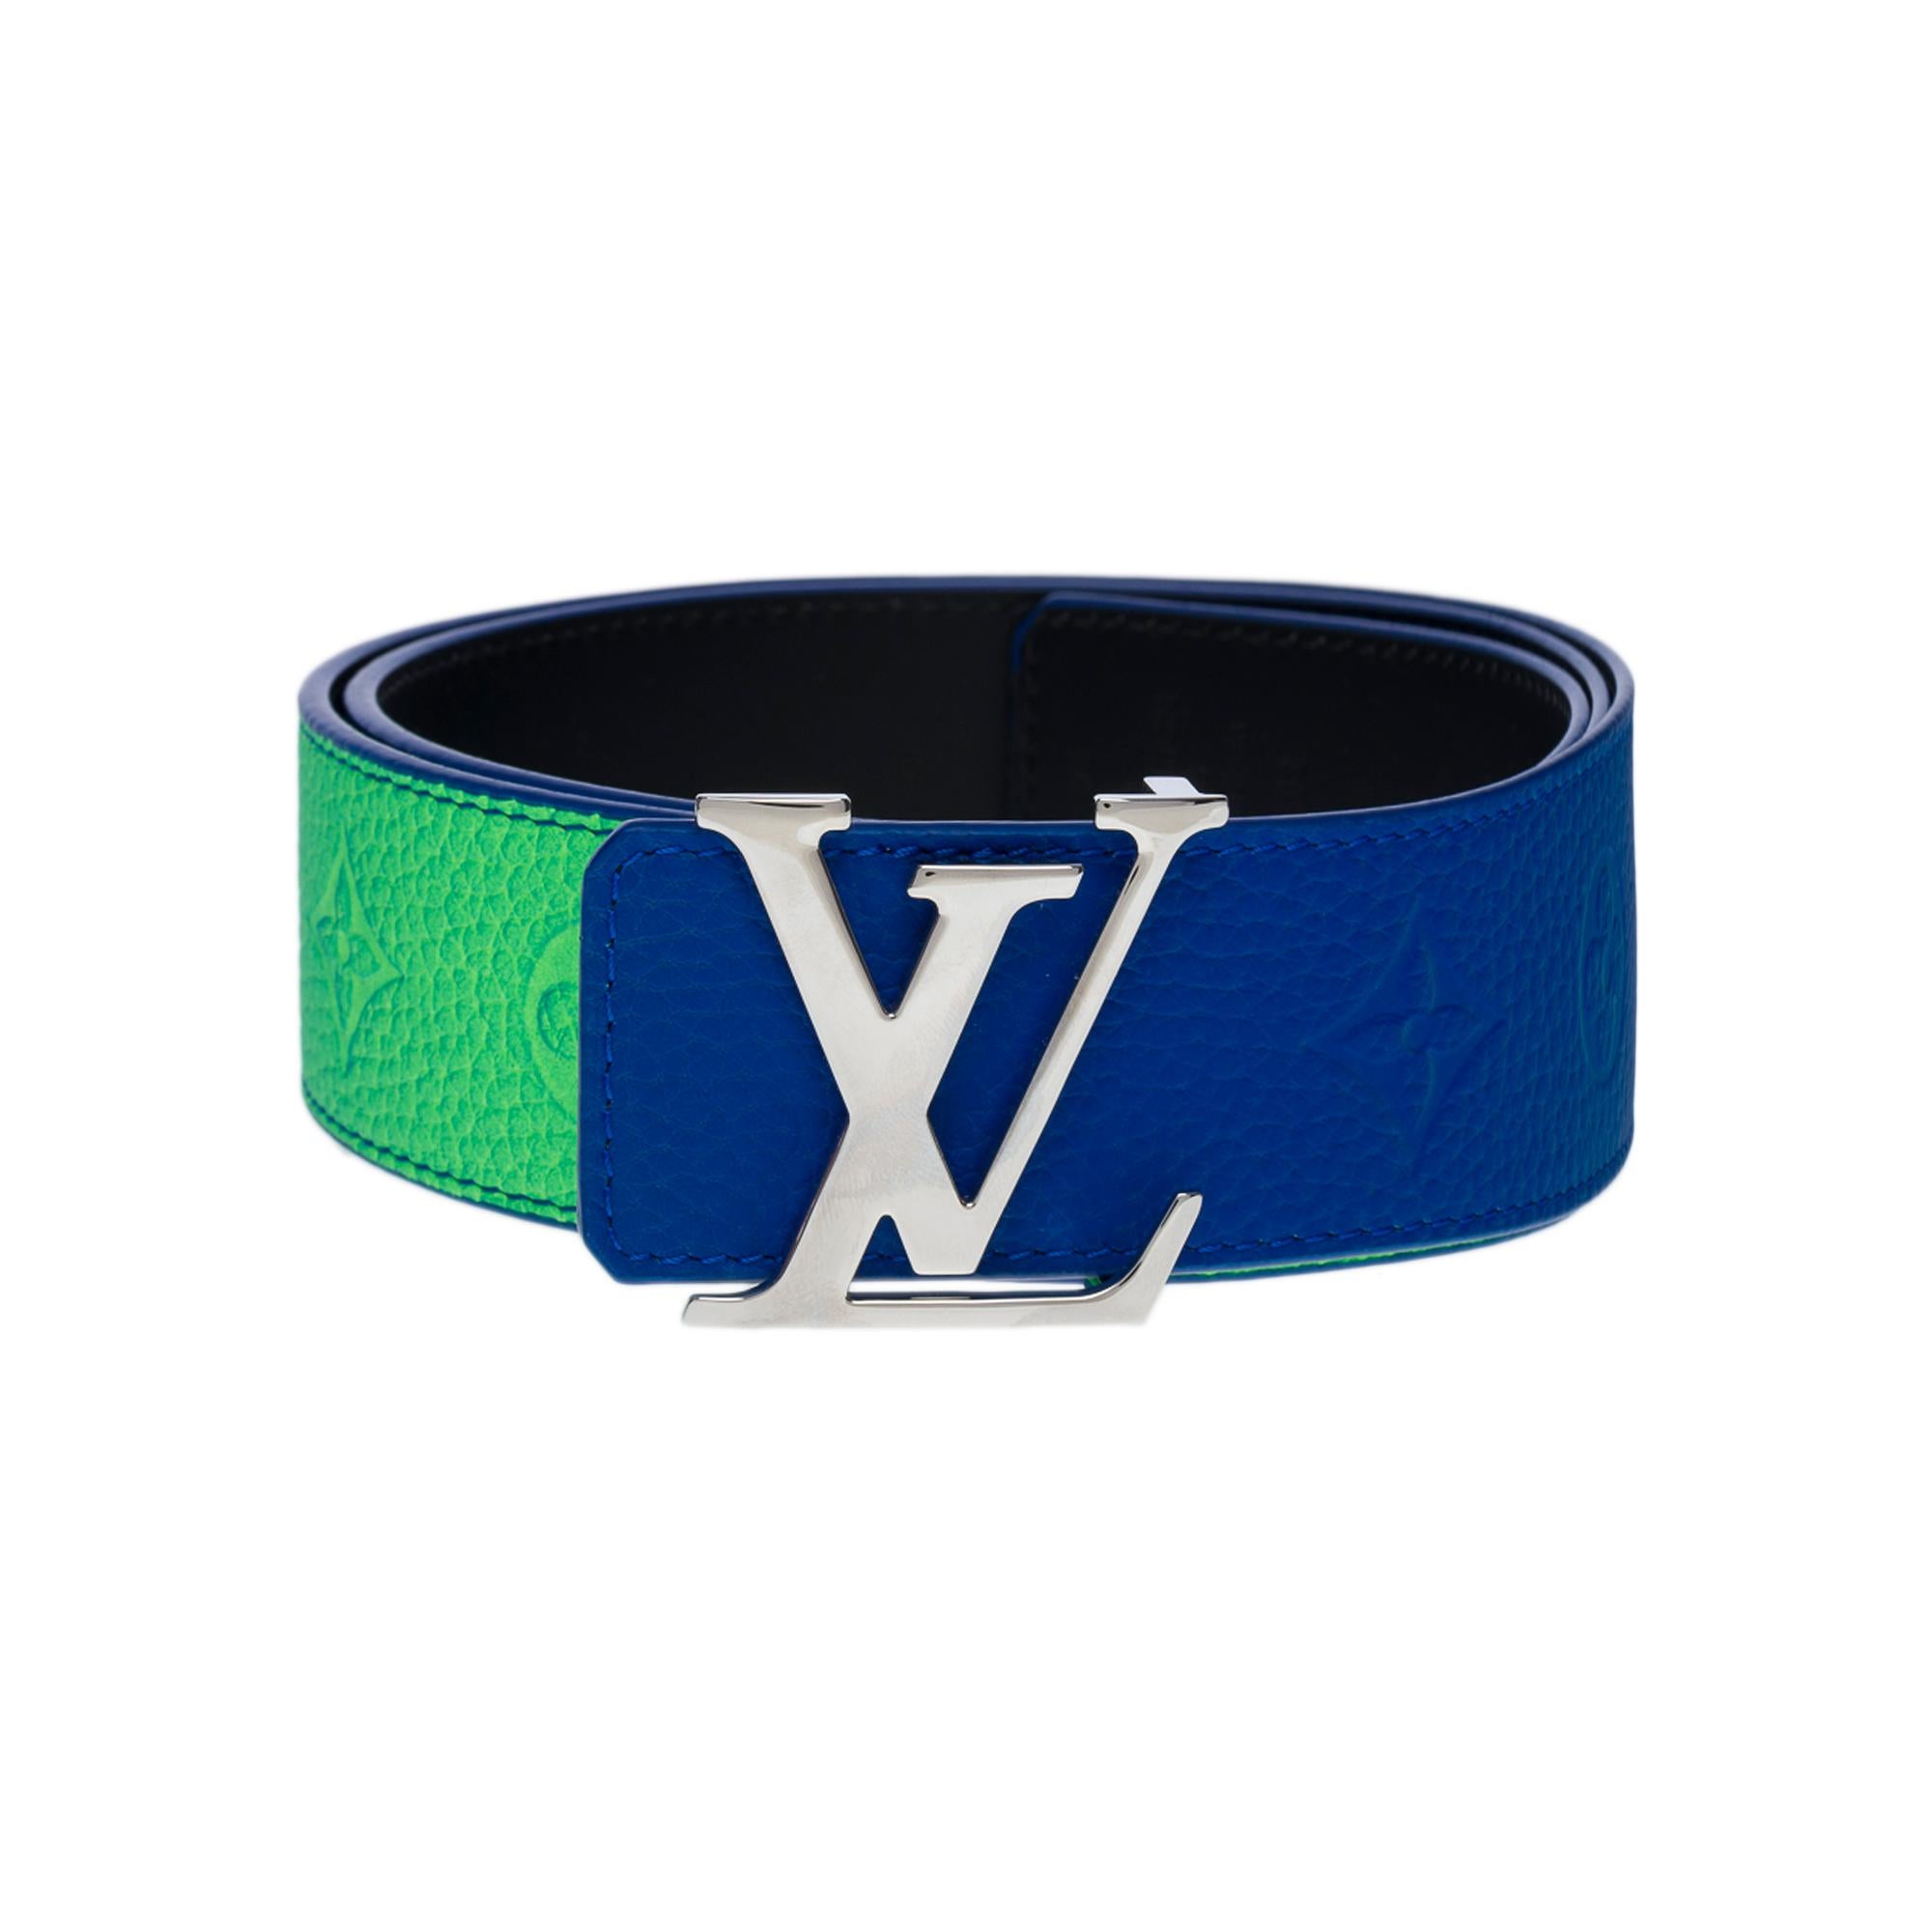 COMPLET

Cette ceinture LV Initiales Taurillon Illusion de 40 mm, bleue et verte, illustre le savoir-faire raffiné et l'esprit audacieux de la Maison. La sangle réversible présente un motif Monogram en relief avec un effet pulvérisé pour un look